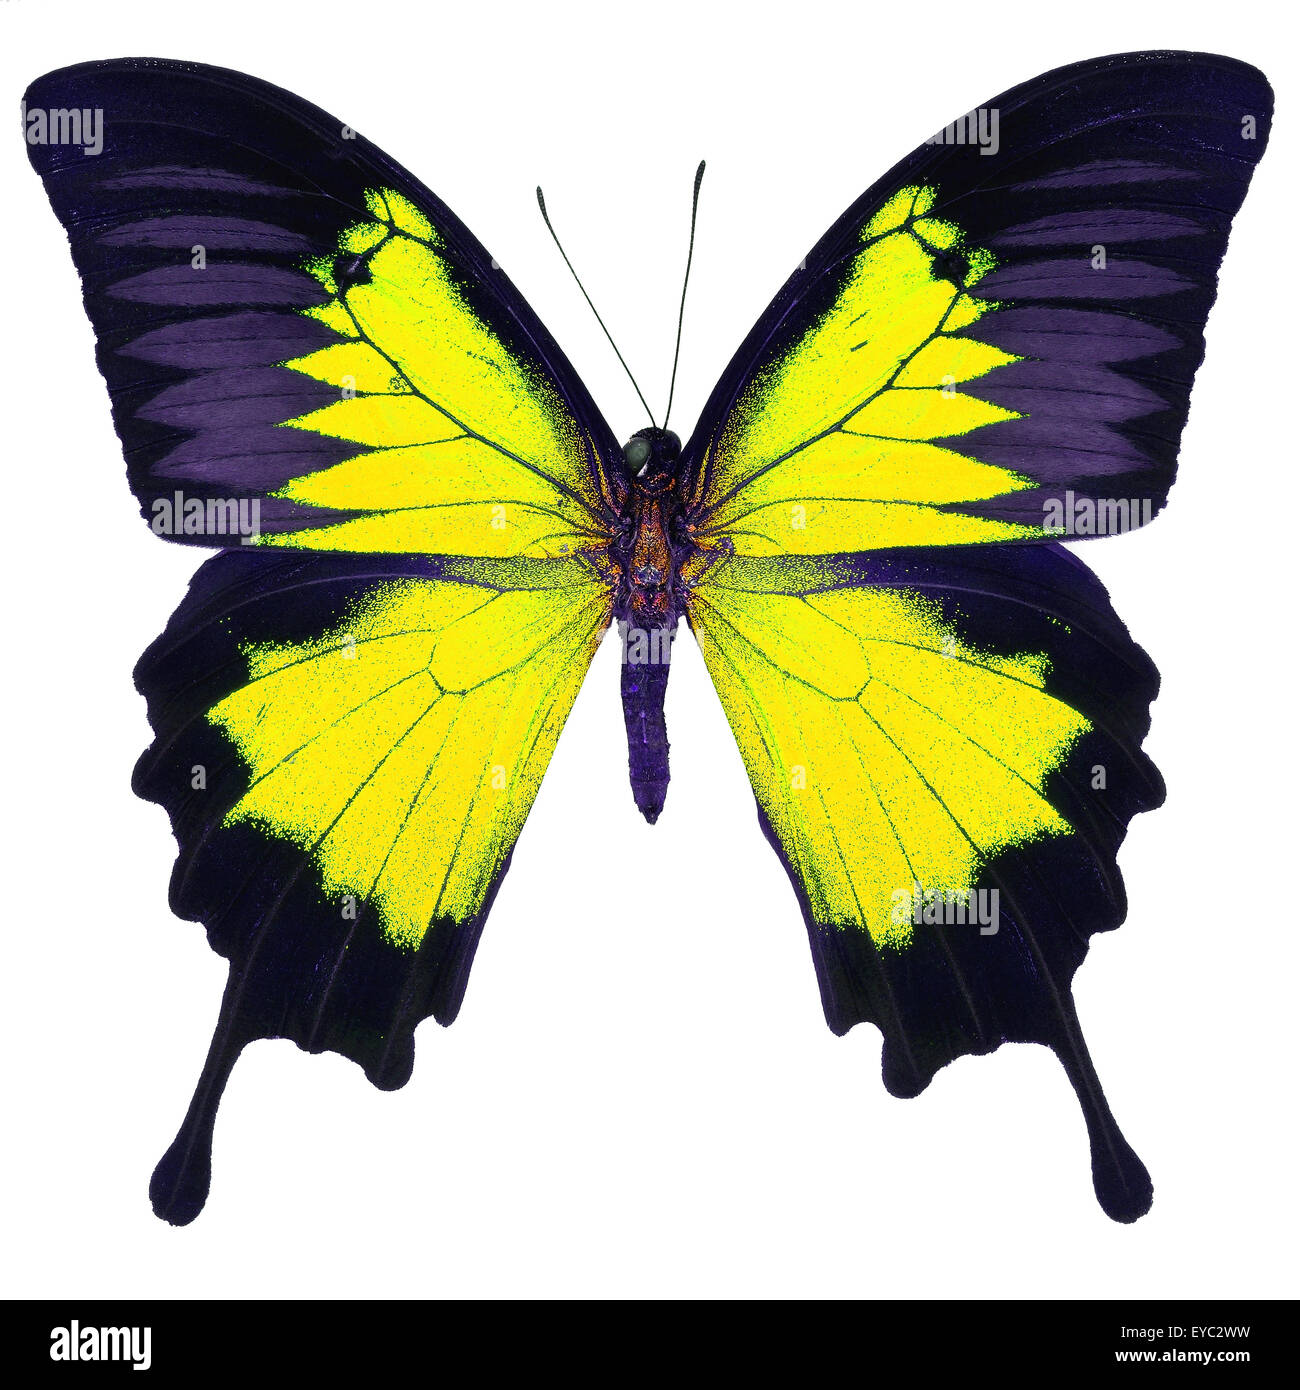 Beau papillon jaune, bleu, bleu de la montagne de l'empereur (Papilio ulysses) dans fantaisie profil de couleur, isolé sur fond blanc Banque D'Images